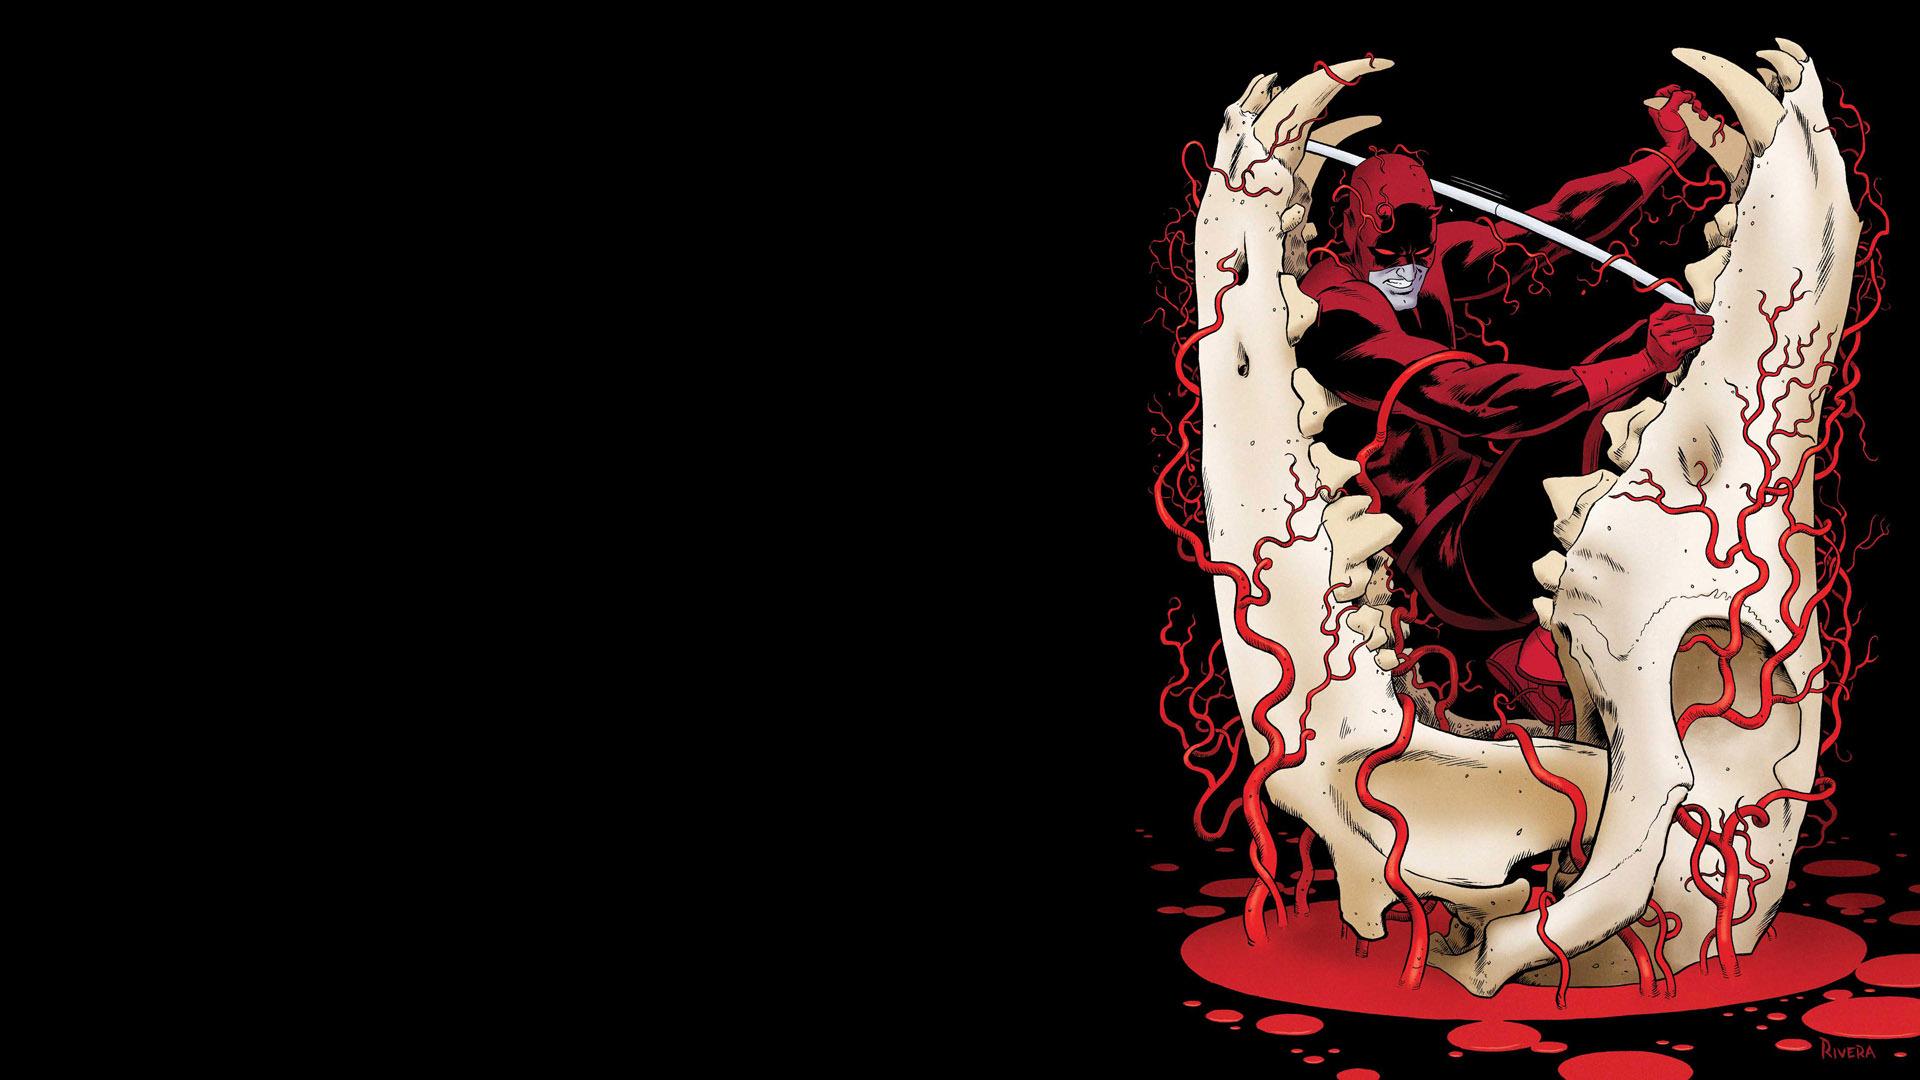 مارول کامیکس دردویل جدید را در مجموعه کمیکی Daredevil معرفی کرد